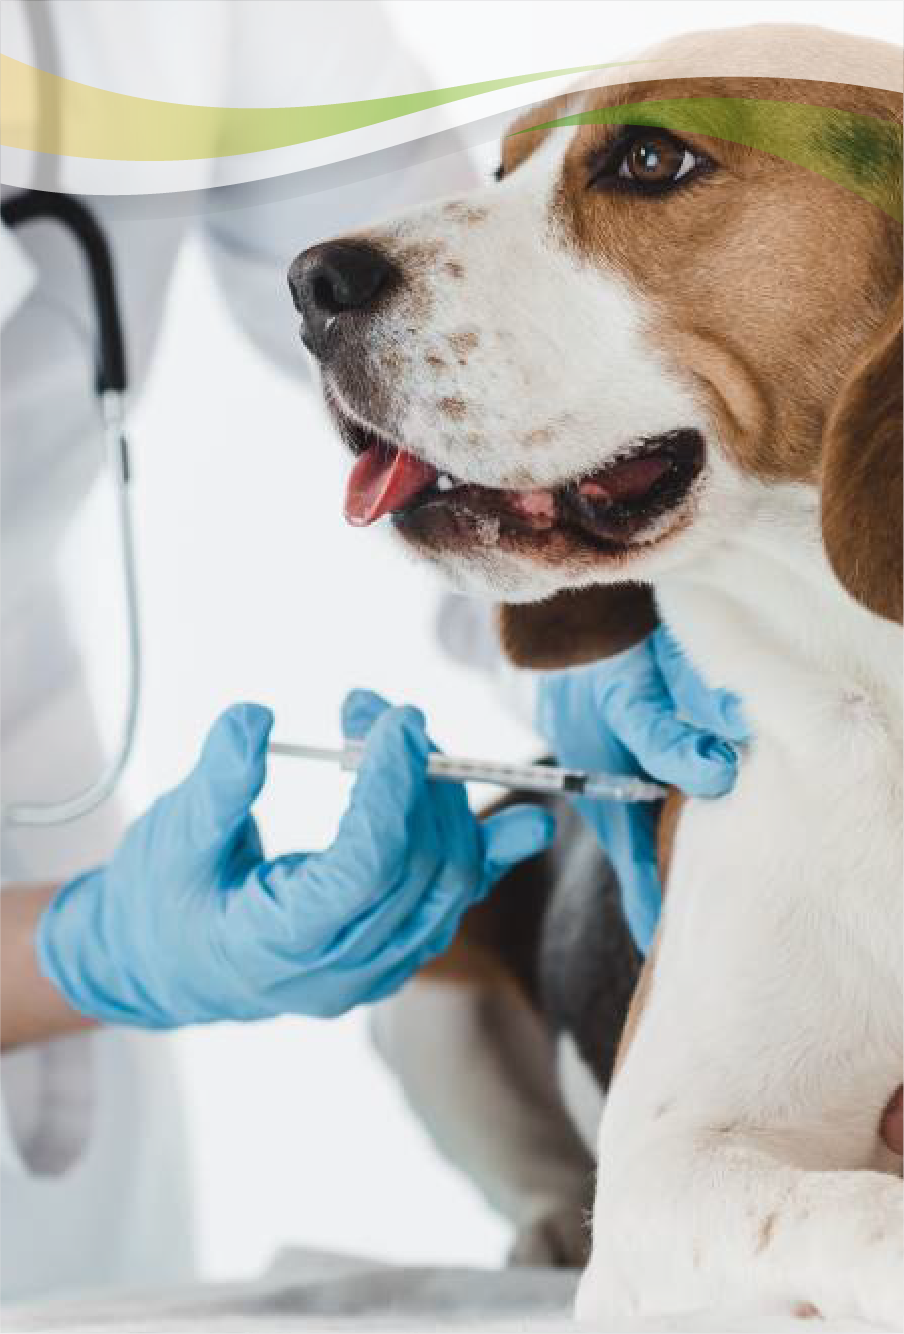 Clínica Veterinaria Reino Animal – La clínica veterinaria en Madrid con  Urgencias 24 Horas